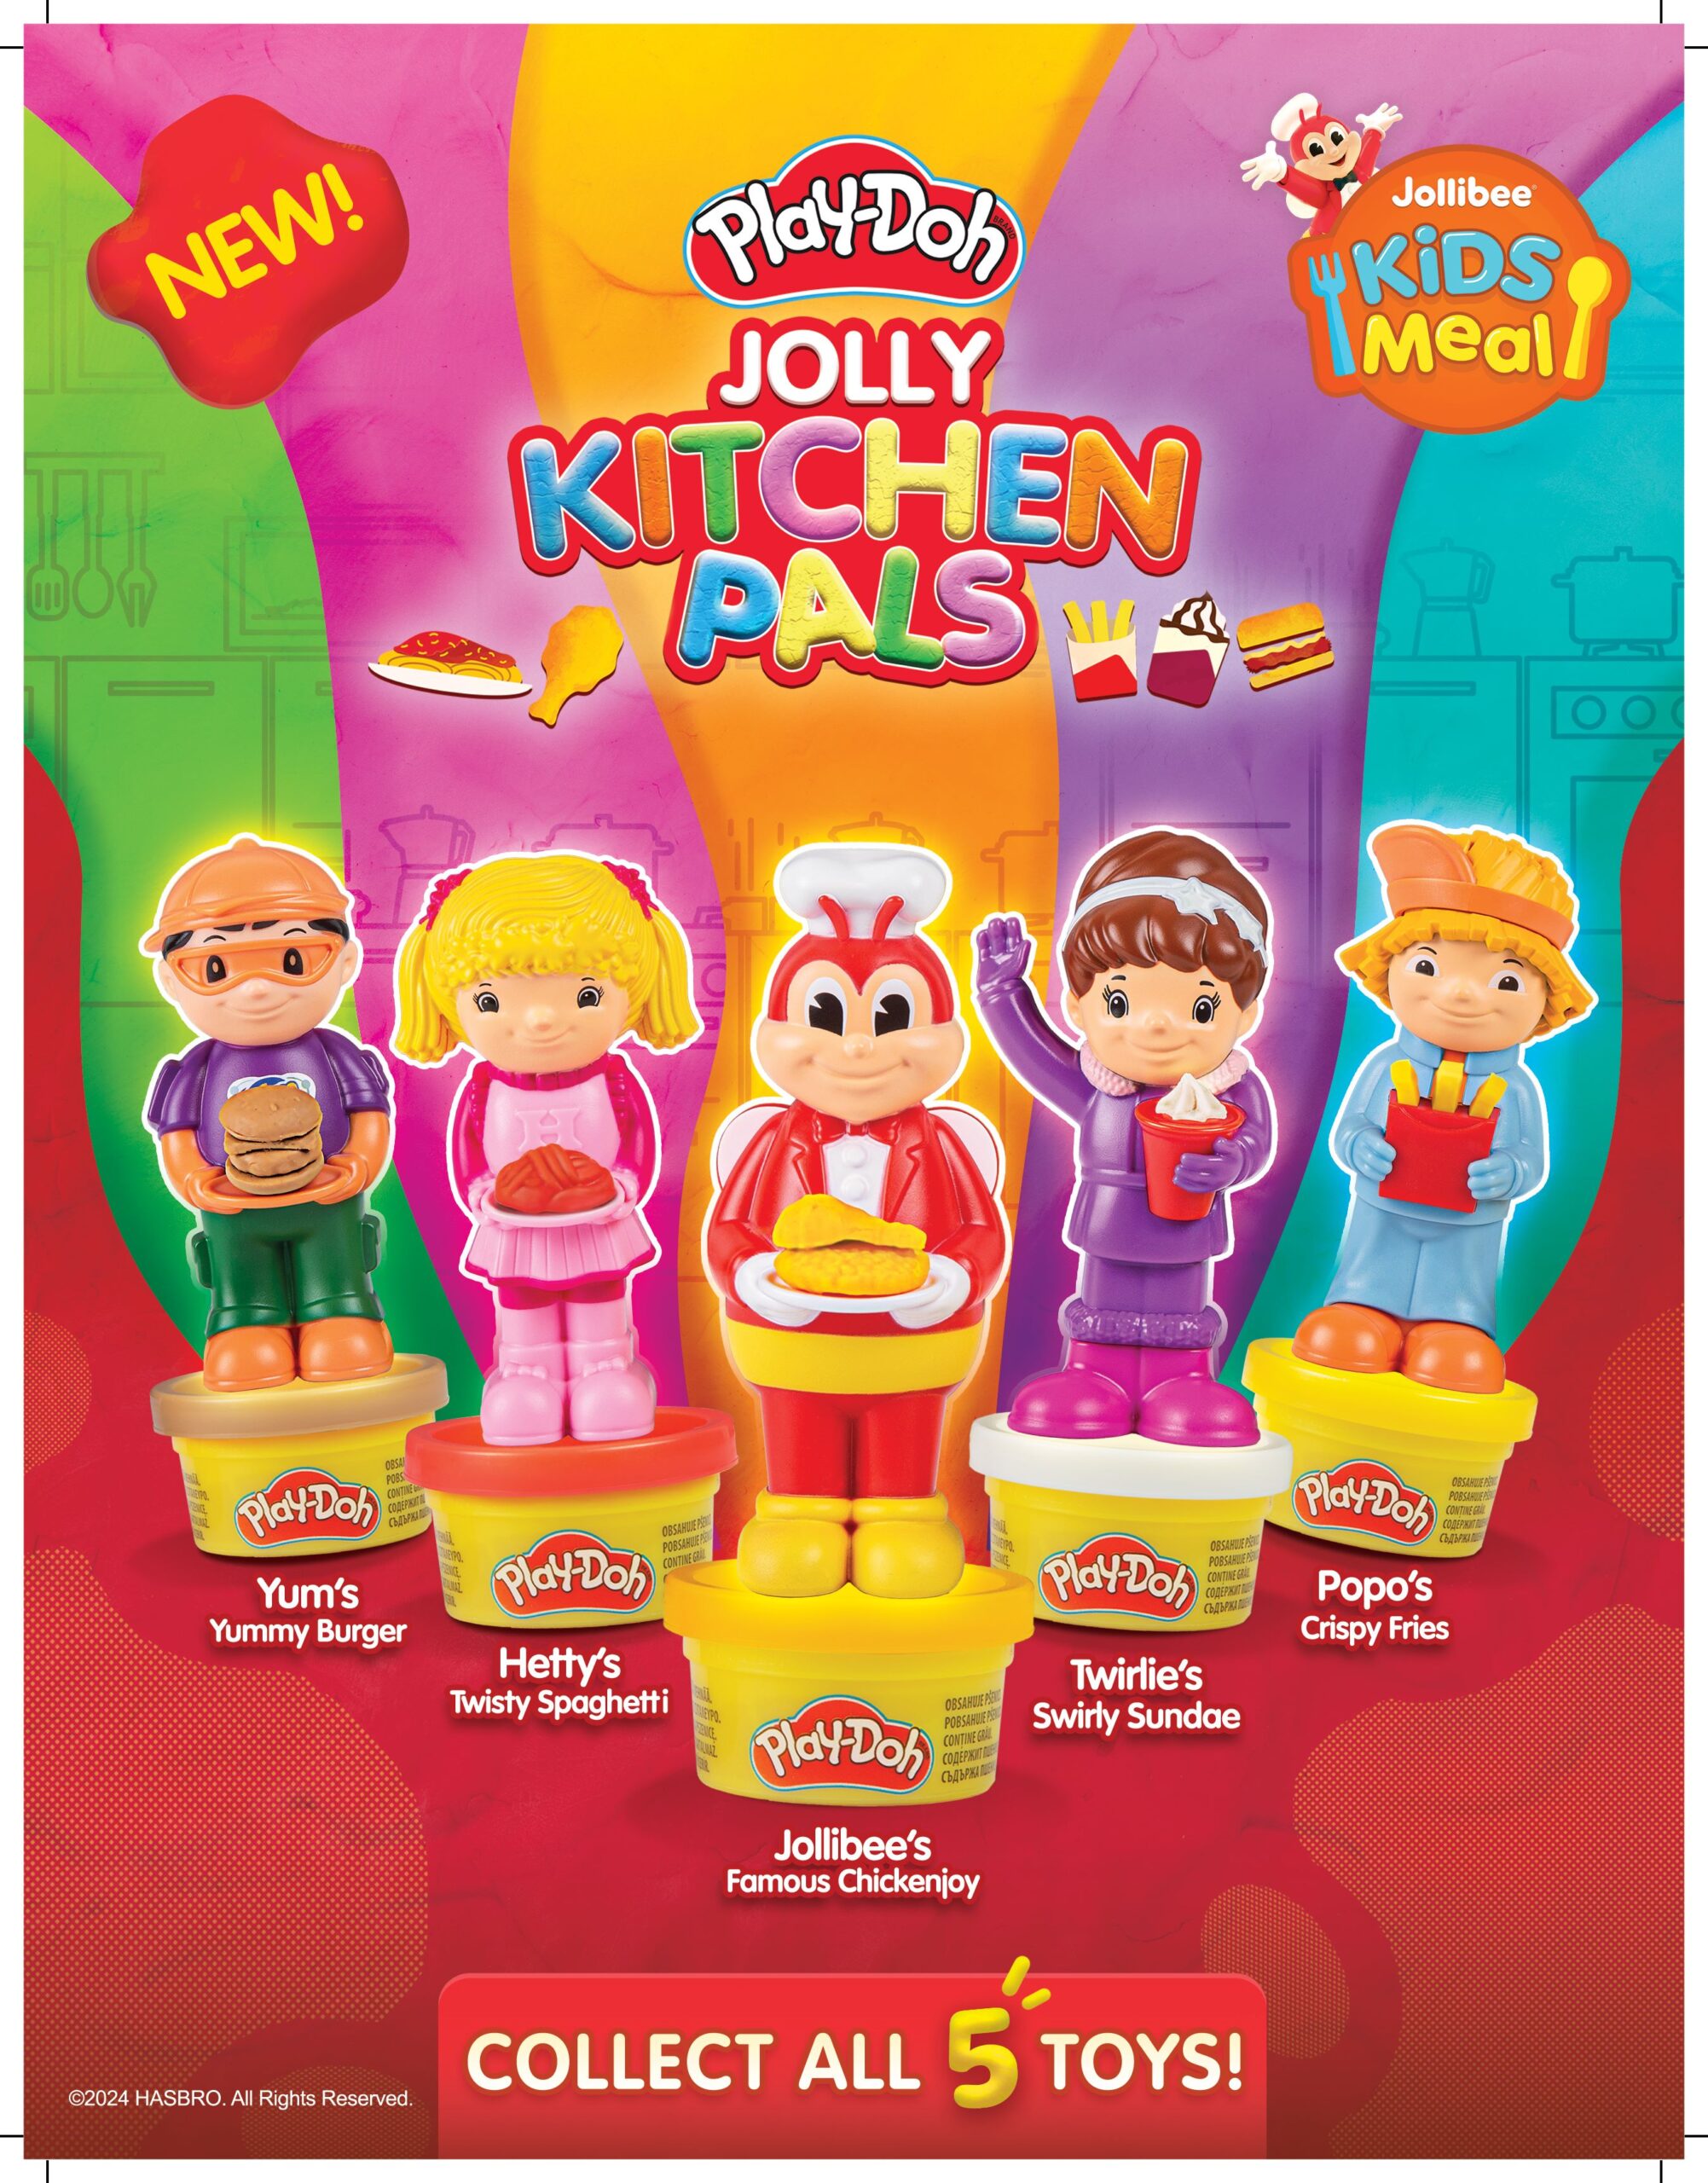 Jollibee Kids Meal X Play-Doh: Crafting Joyful Mealtime Memories with Jollibee